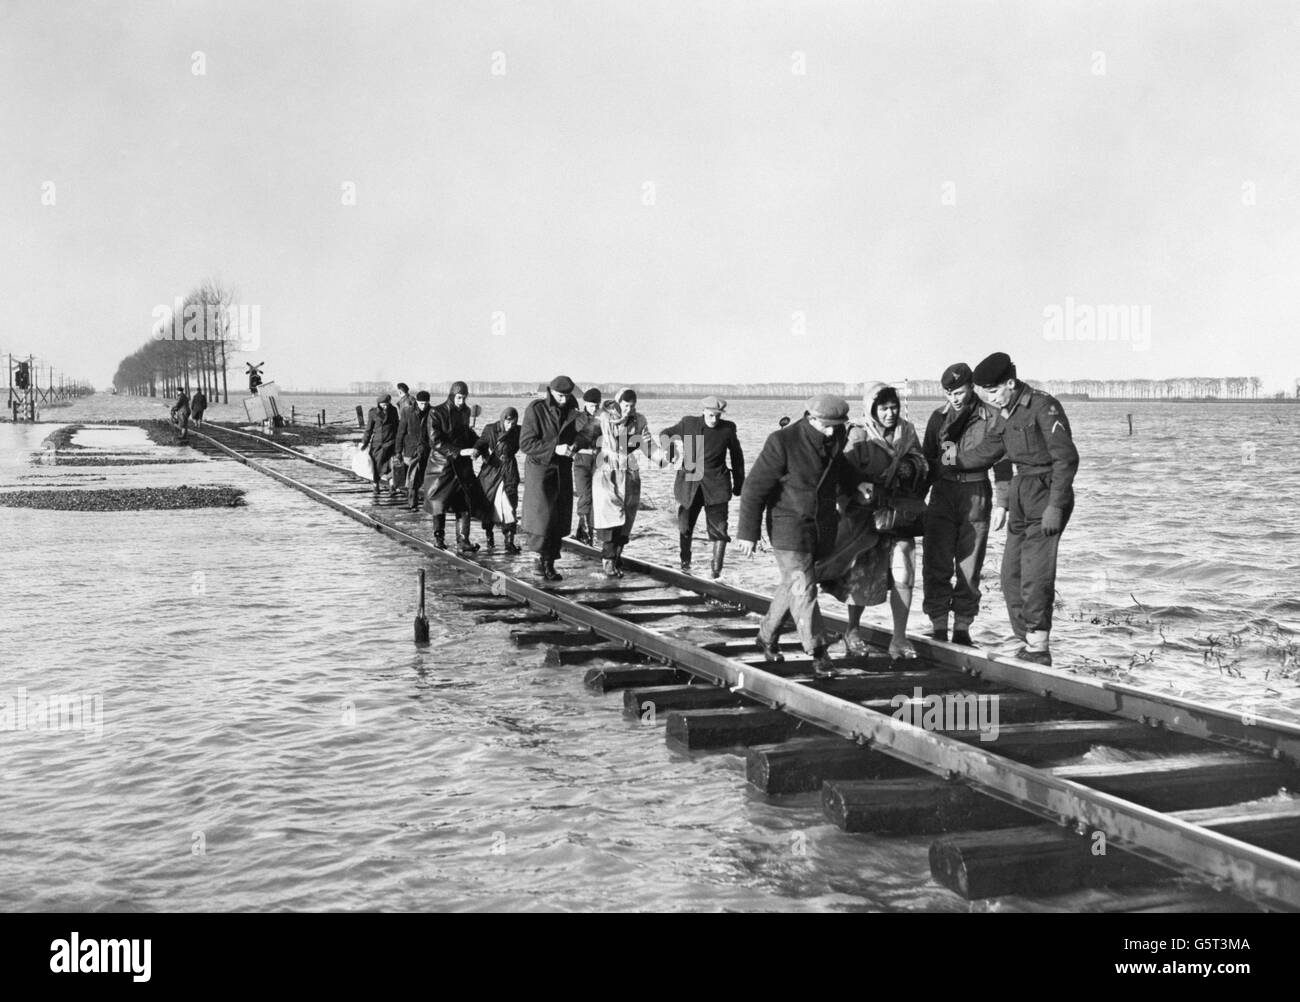 Soldaten helfen dabei, Menschen aus ihren Häusern in Seeland, der südwestlichen Provinz Hollands an der Nordsee, zu retten, da sie auf dem Weg zu einem Ort der Sicherheit eine Eisenbahnstrecke als Brücke über ein riesiges Flutwasser nutzen. Stockfoto